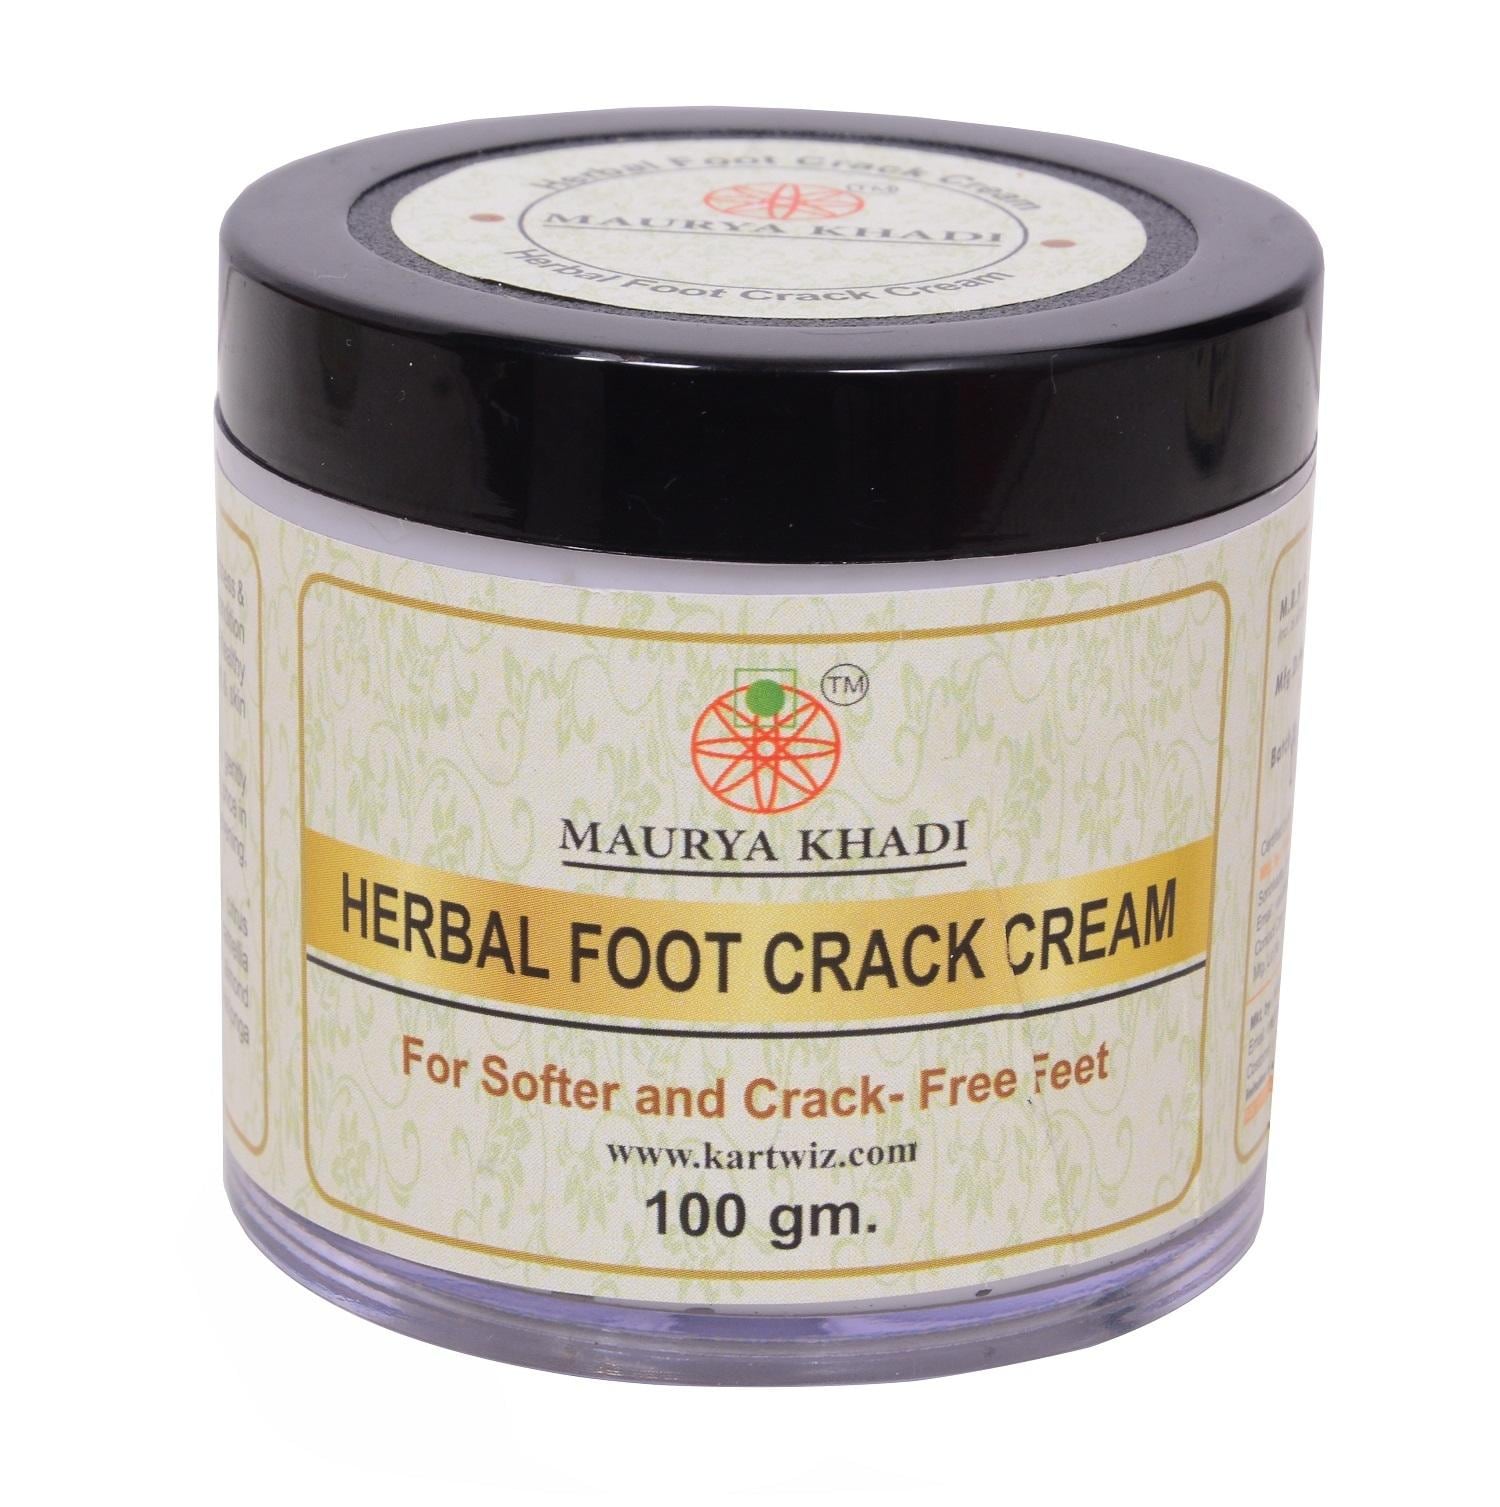 Maurya Khadi Herbal Foot Crack Cream Softens Hydrates Dry Feet, Moisturizes  & Repairs Cracked Heel & Skin, 100g Pack of 1 - JioMart